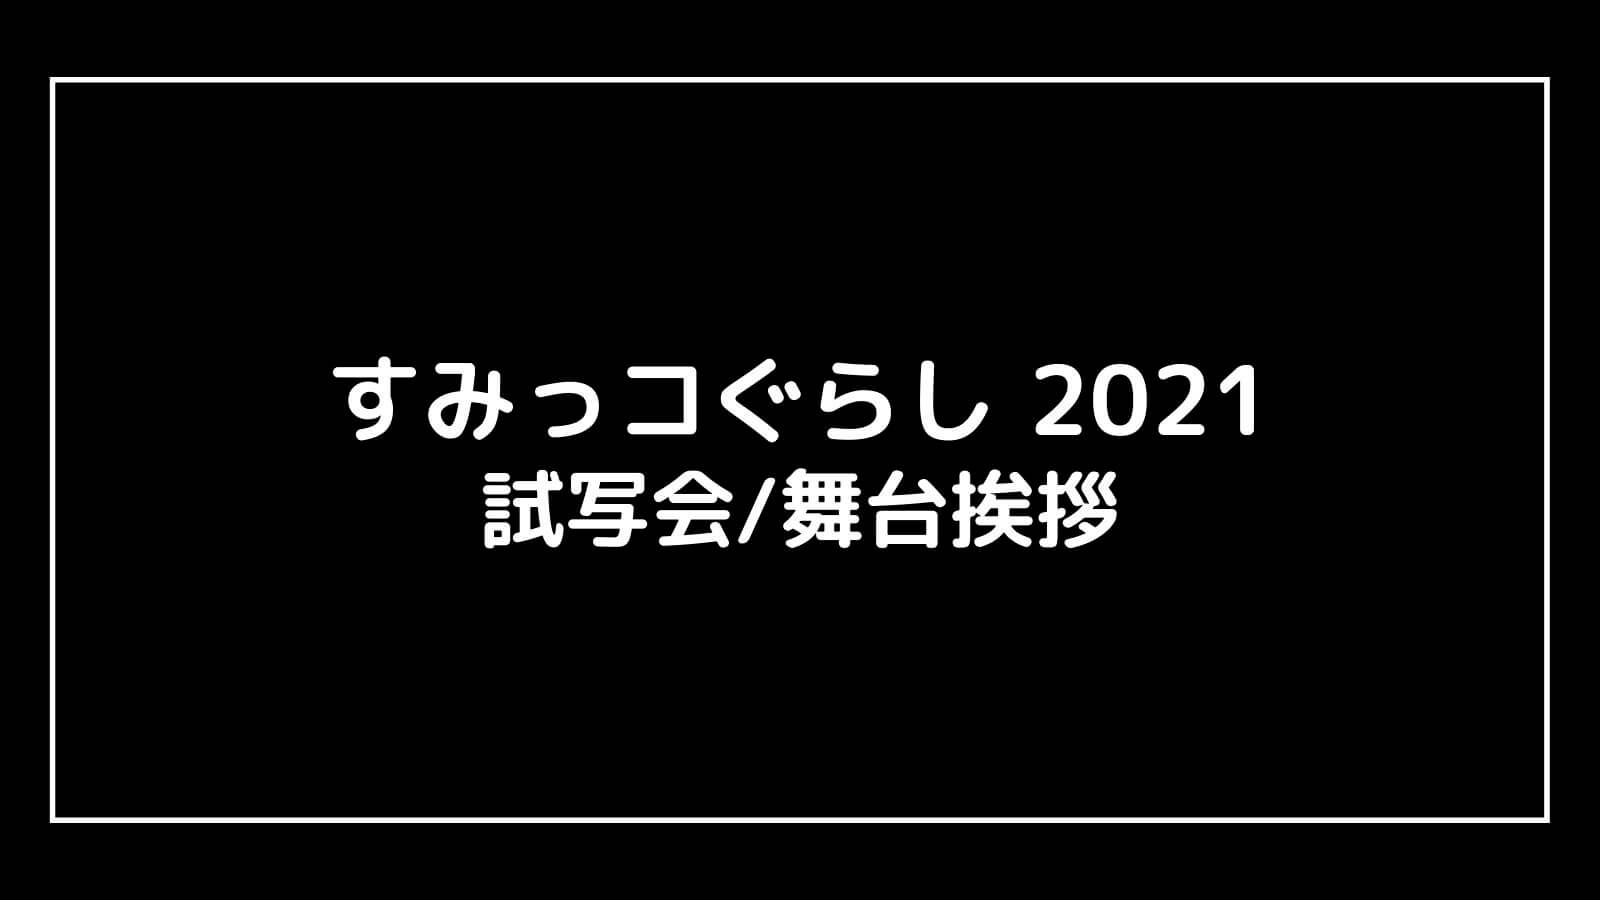 映画『すみっコぐらし2021』の試写会と舞台挨拶ライブビューイング情報【⻘い月夜のまほうのコ】